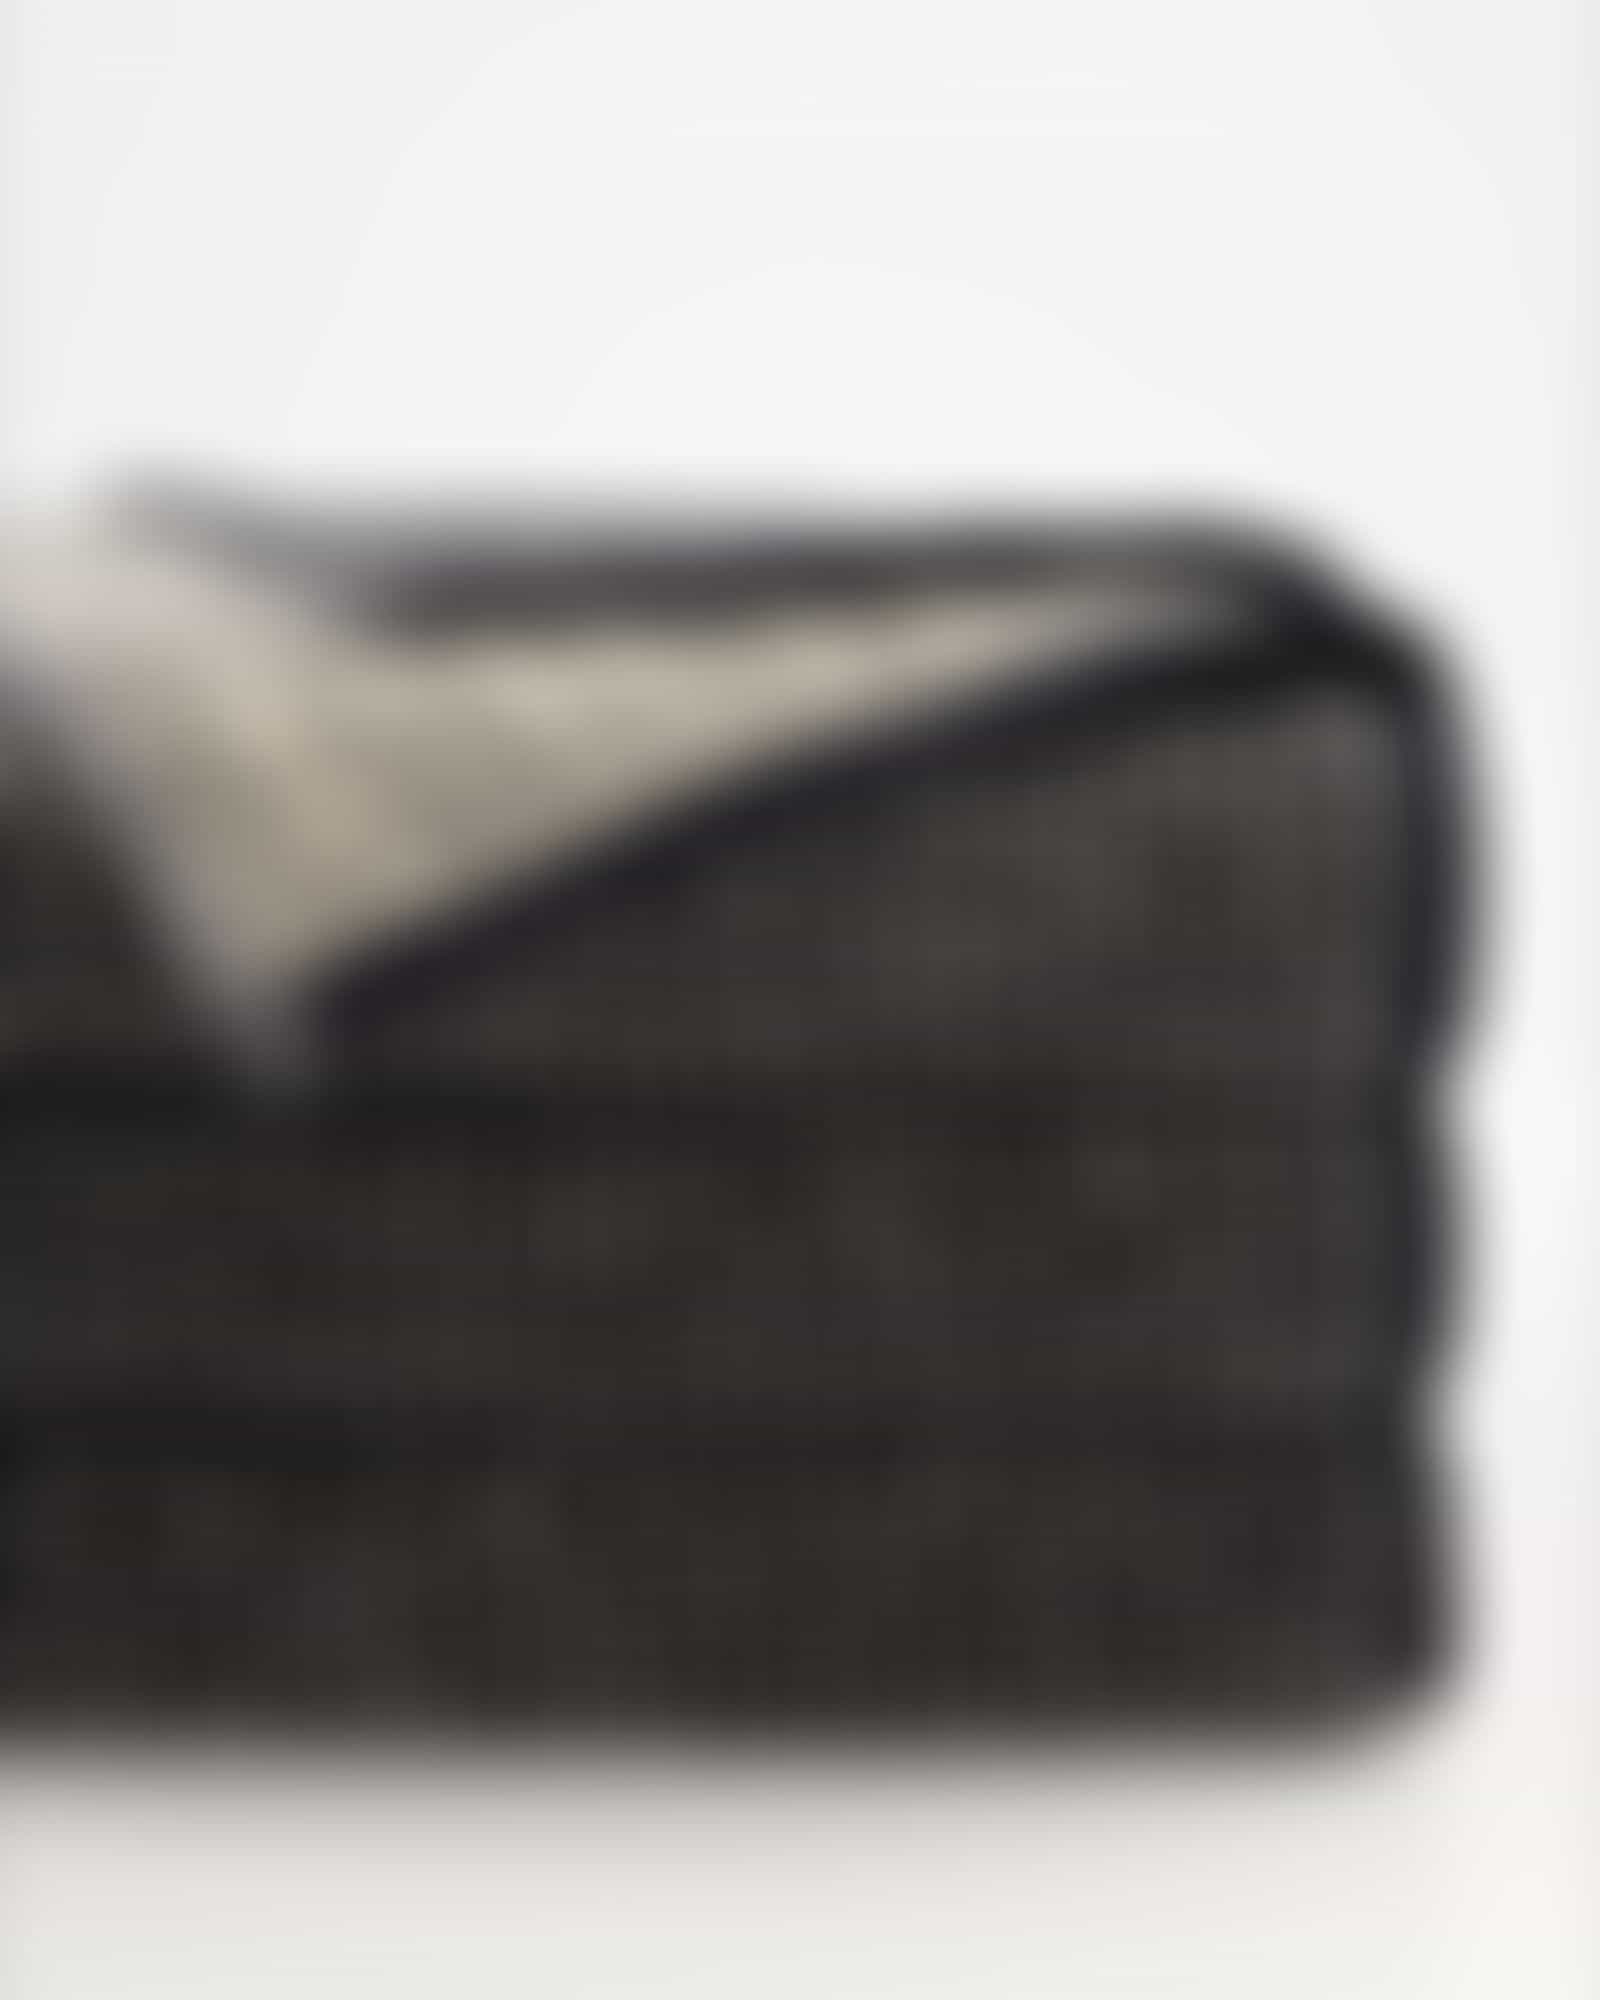 JOOP! Handtücher Select Allover 1695 - Farbe: ebony - 39 - Duschtuch 80x150 cm Detailbild 2